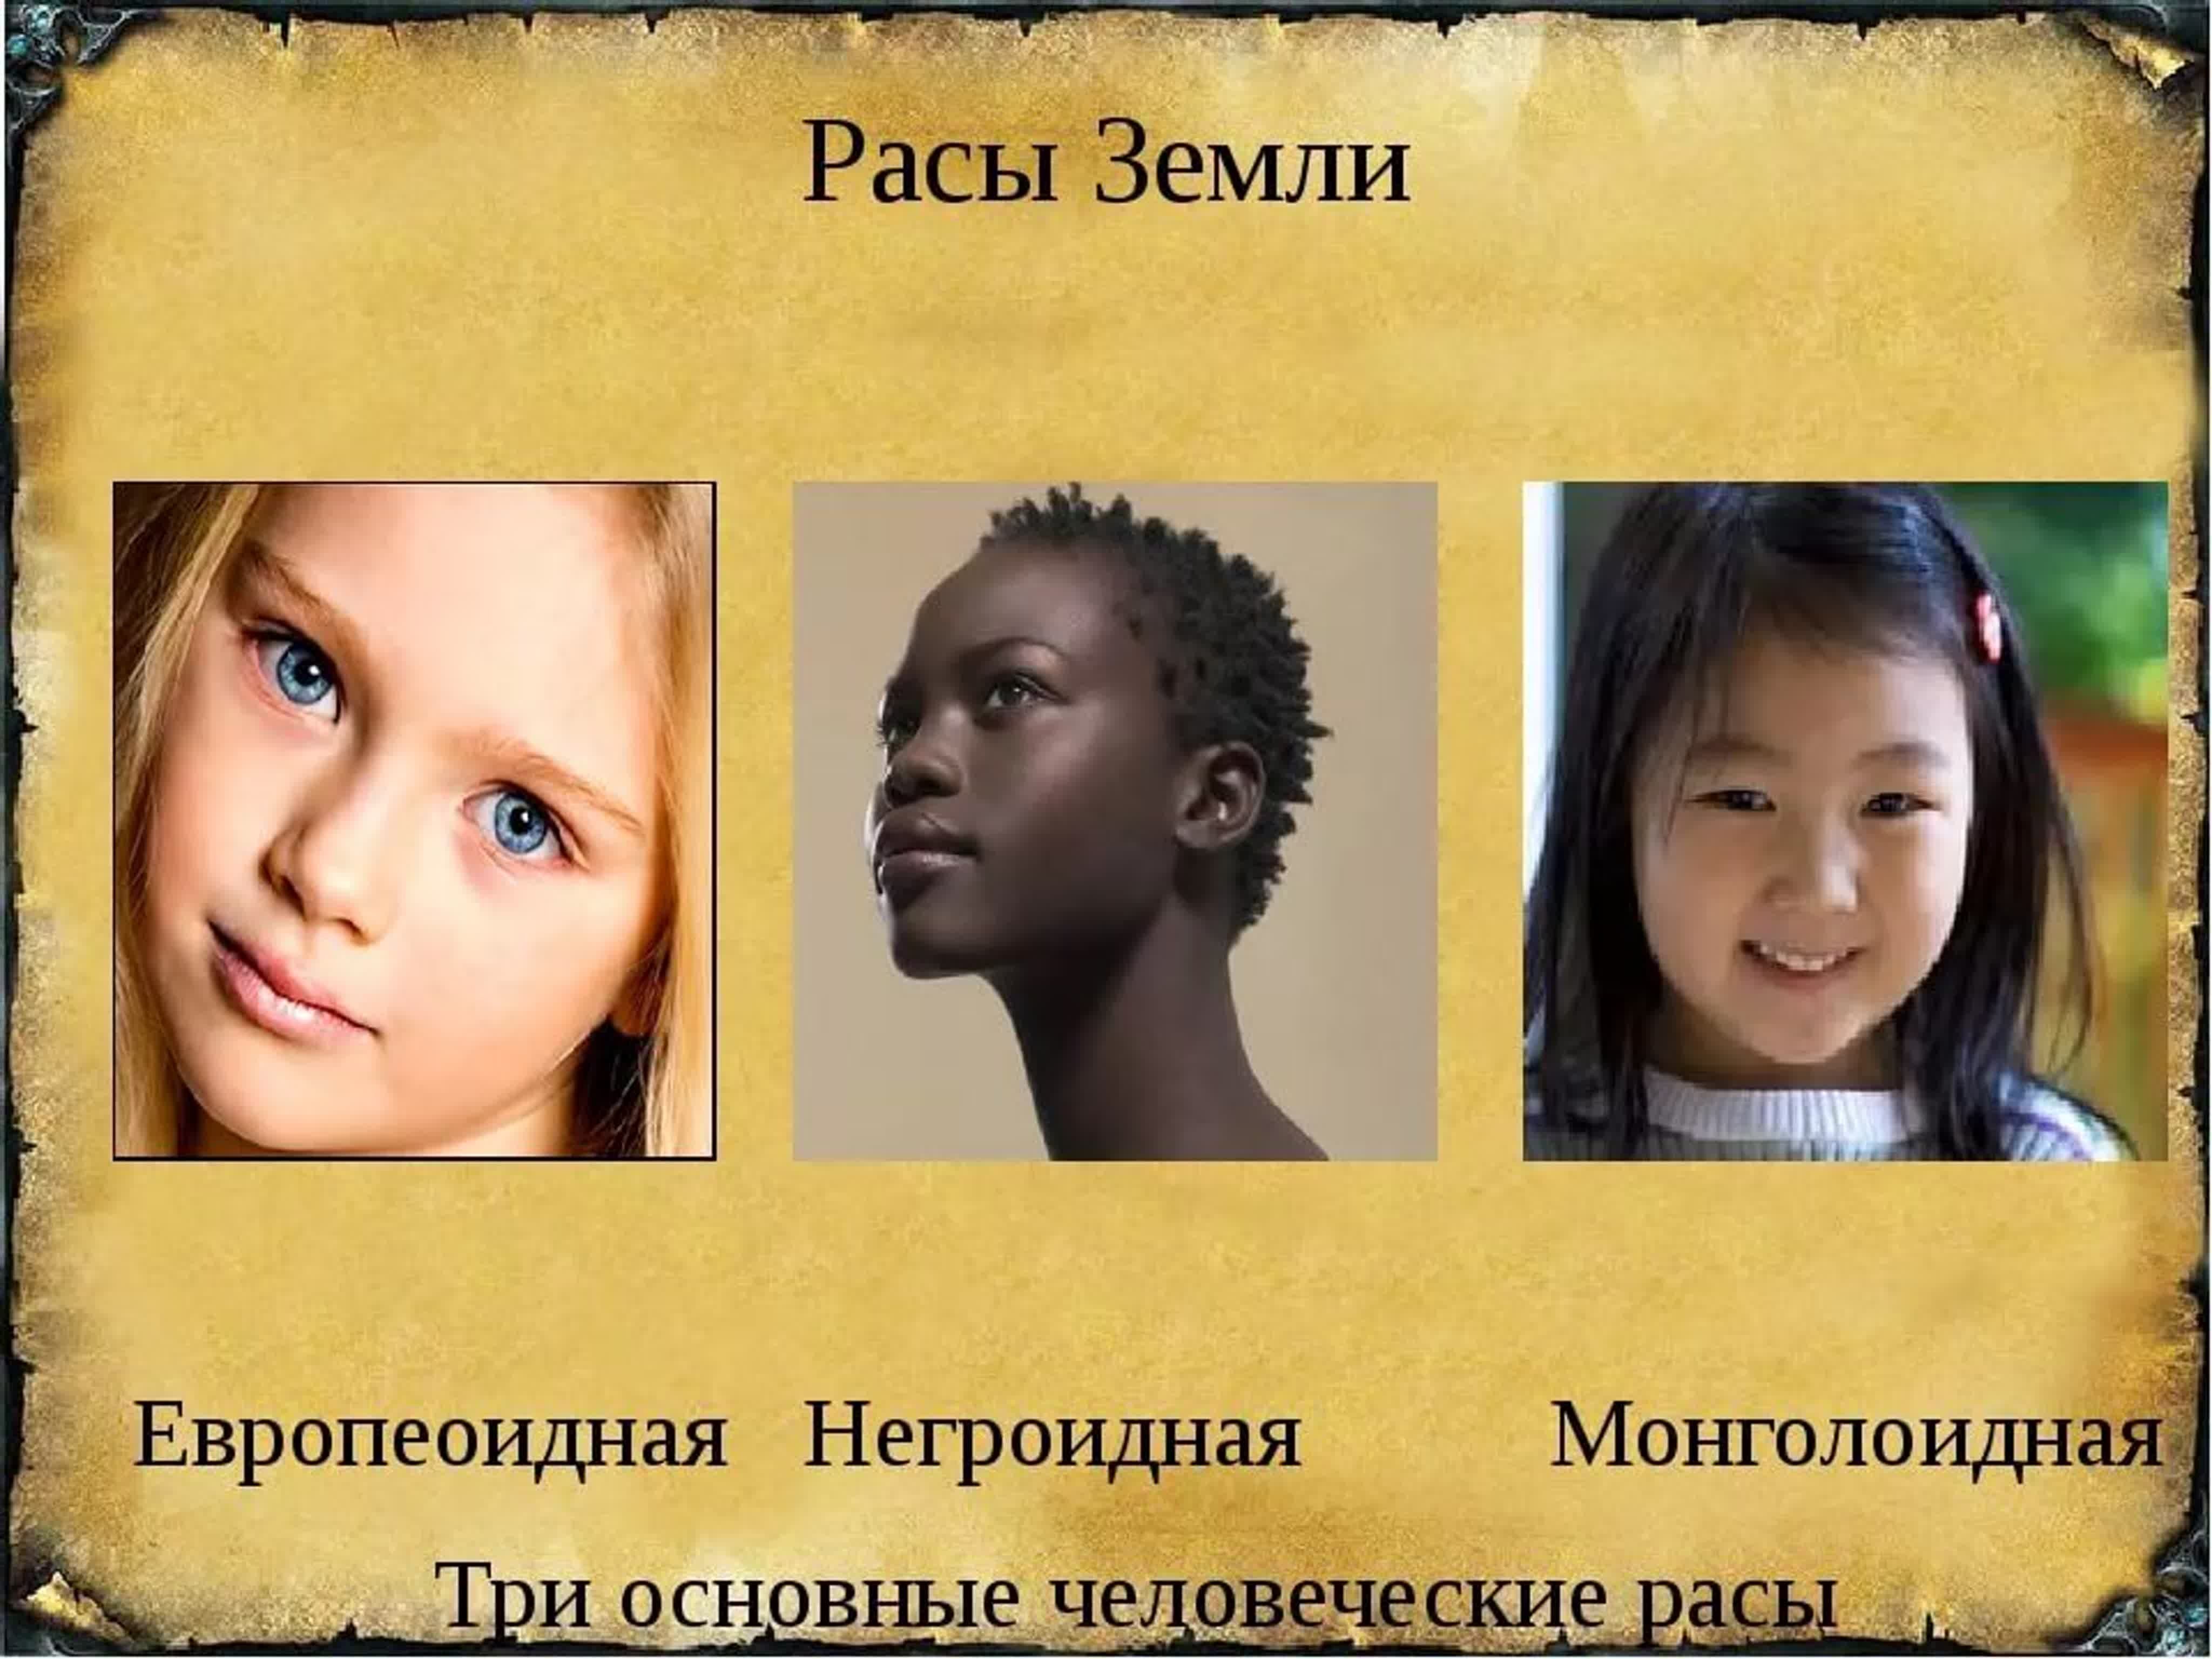 Расовые различия людей. Расы людей европеоидная монголоидная негроидная. Три расы монголоидная, негроидная, европейская. Люди европеоидной и монголоидной расы. Современные расы.